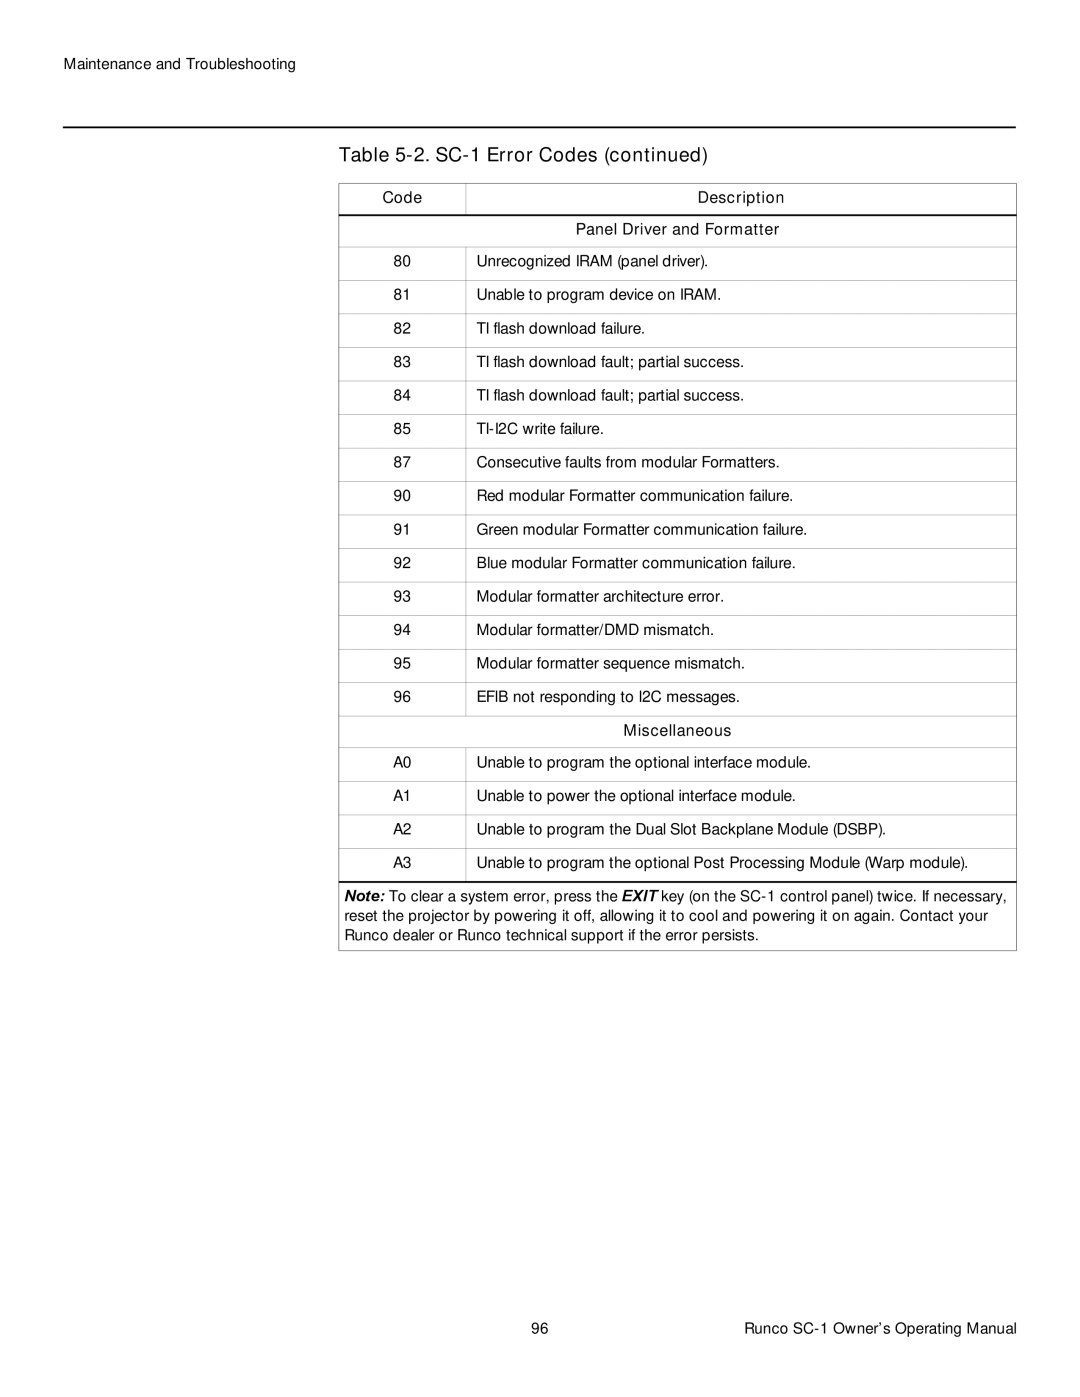 Runco SC-1 manual Code Description Panel Driver and Formatter, Miscellaneous 